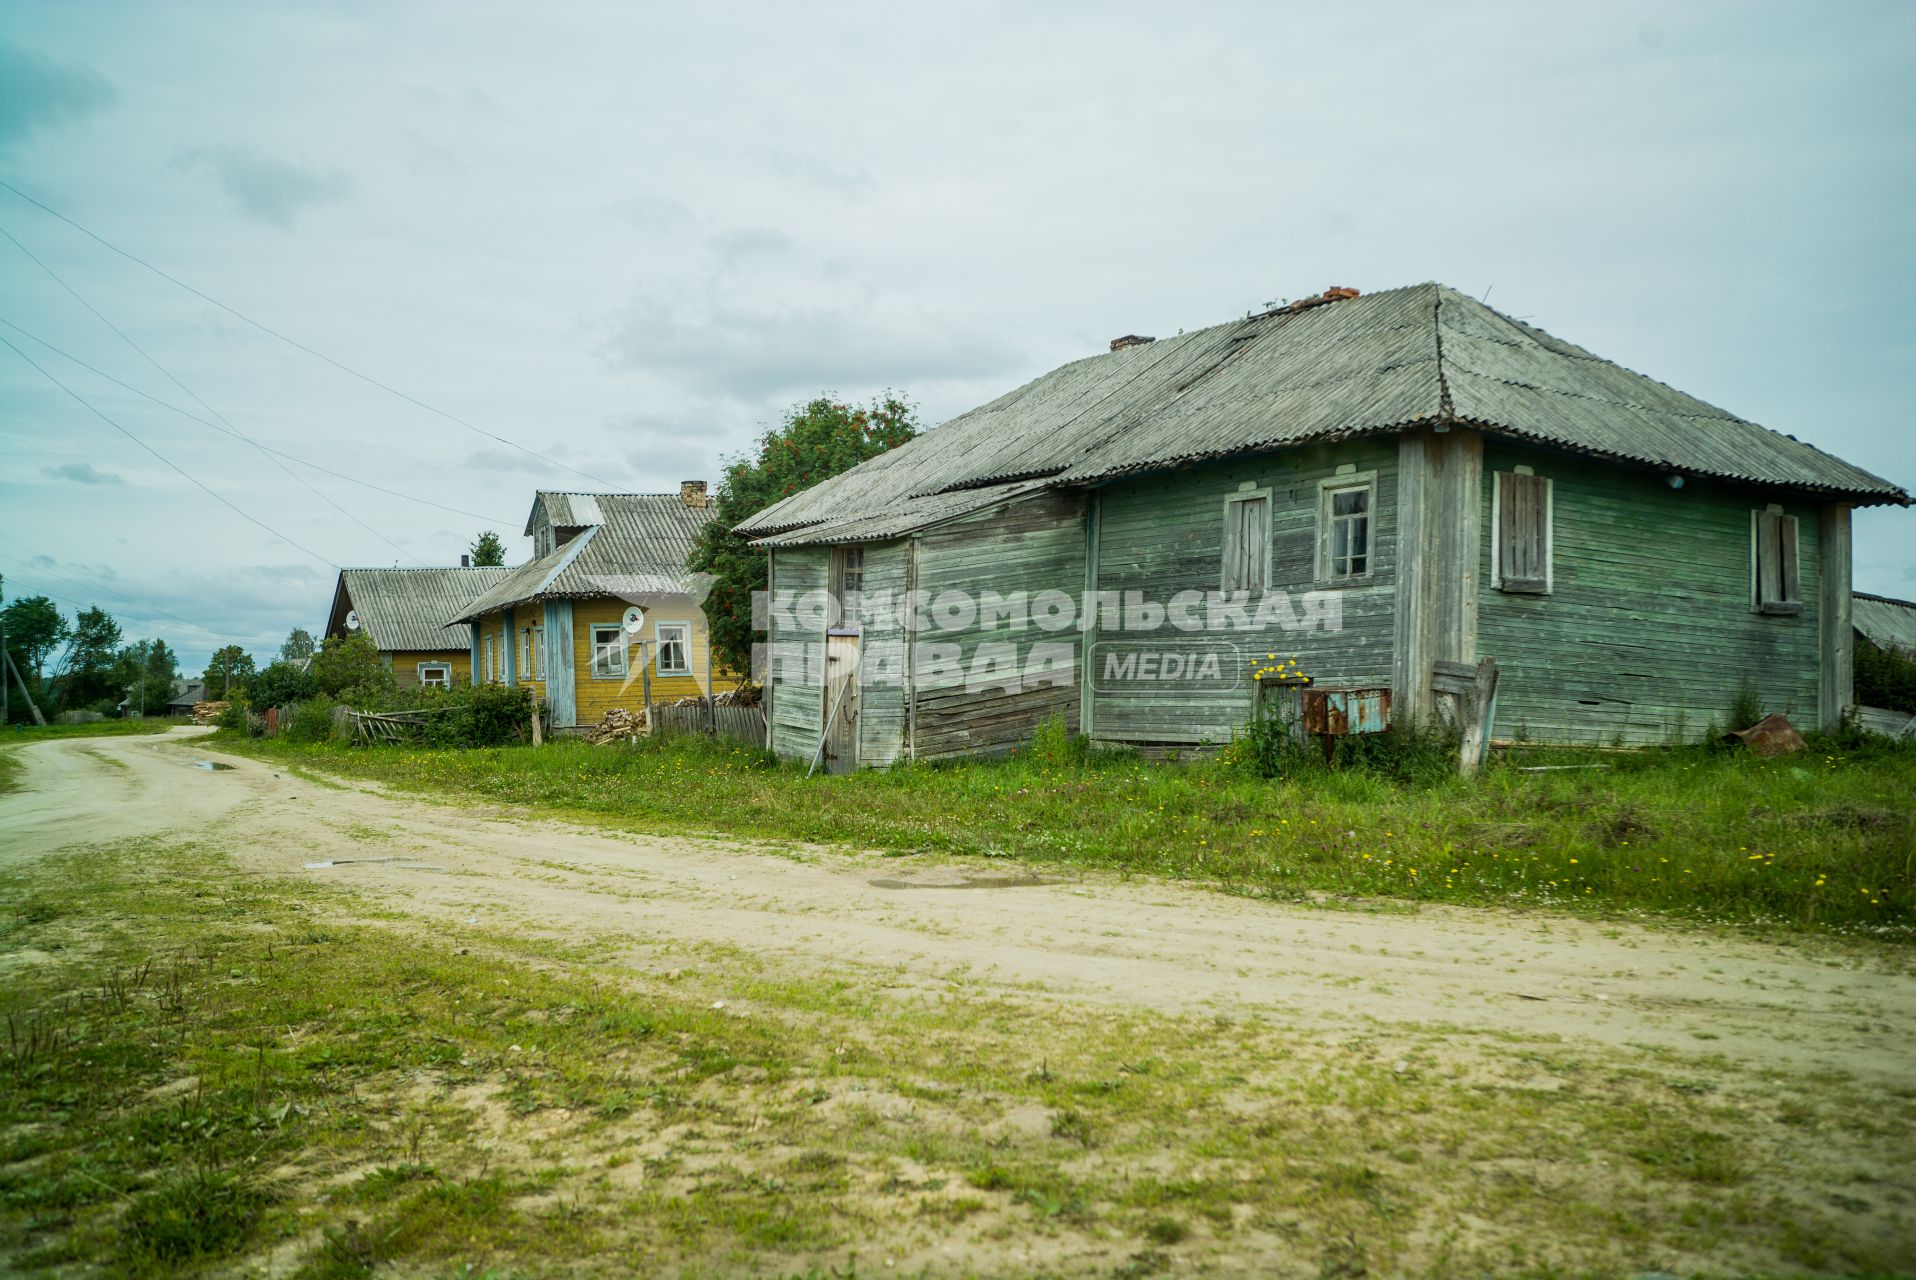 Архангельская область, деревня Лядины.  Деревянные дома у дороги.